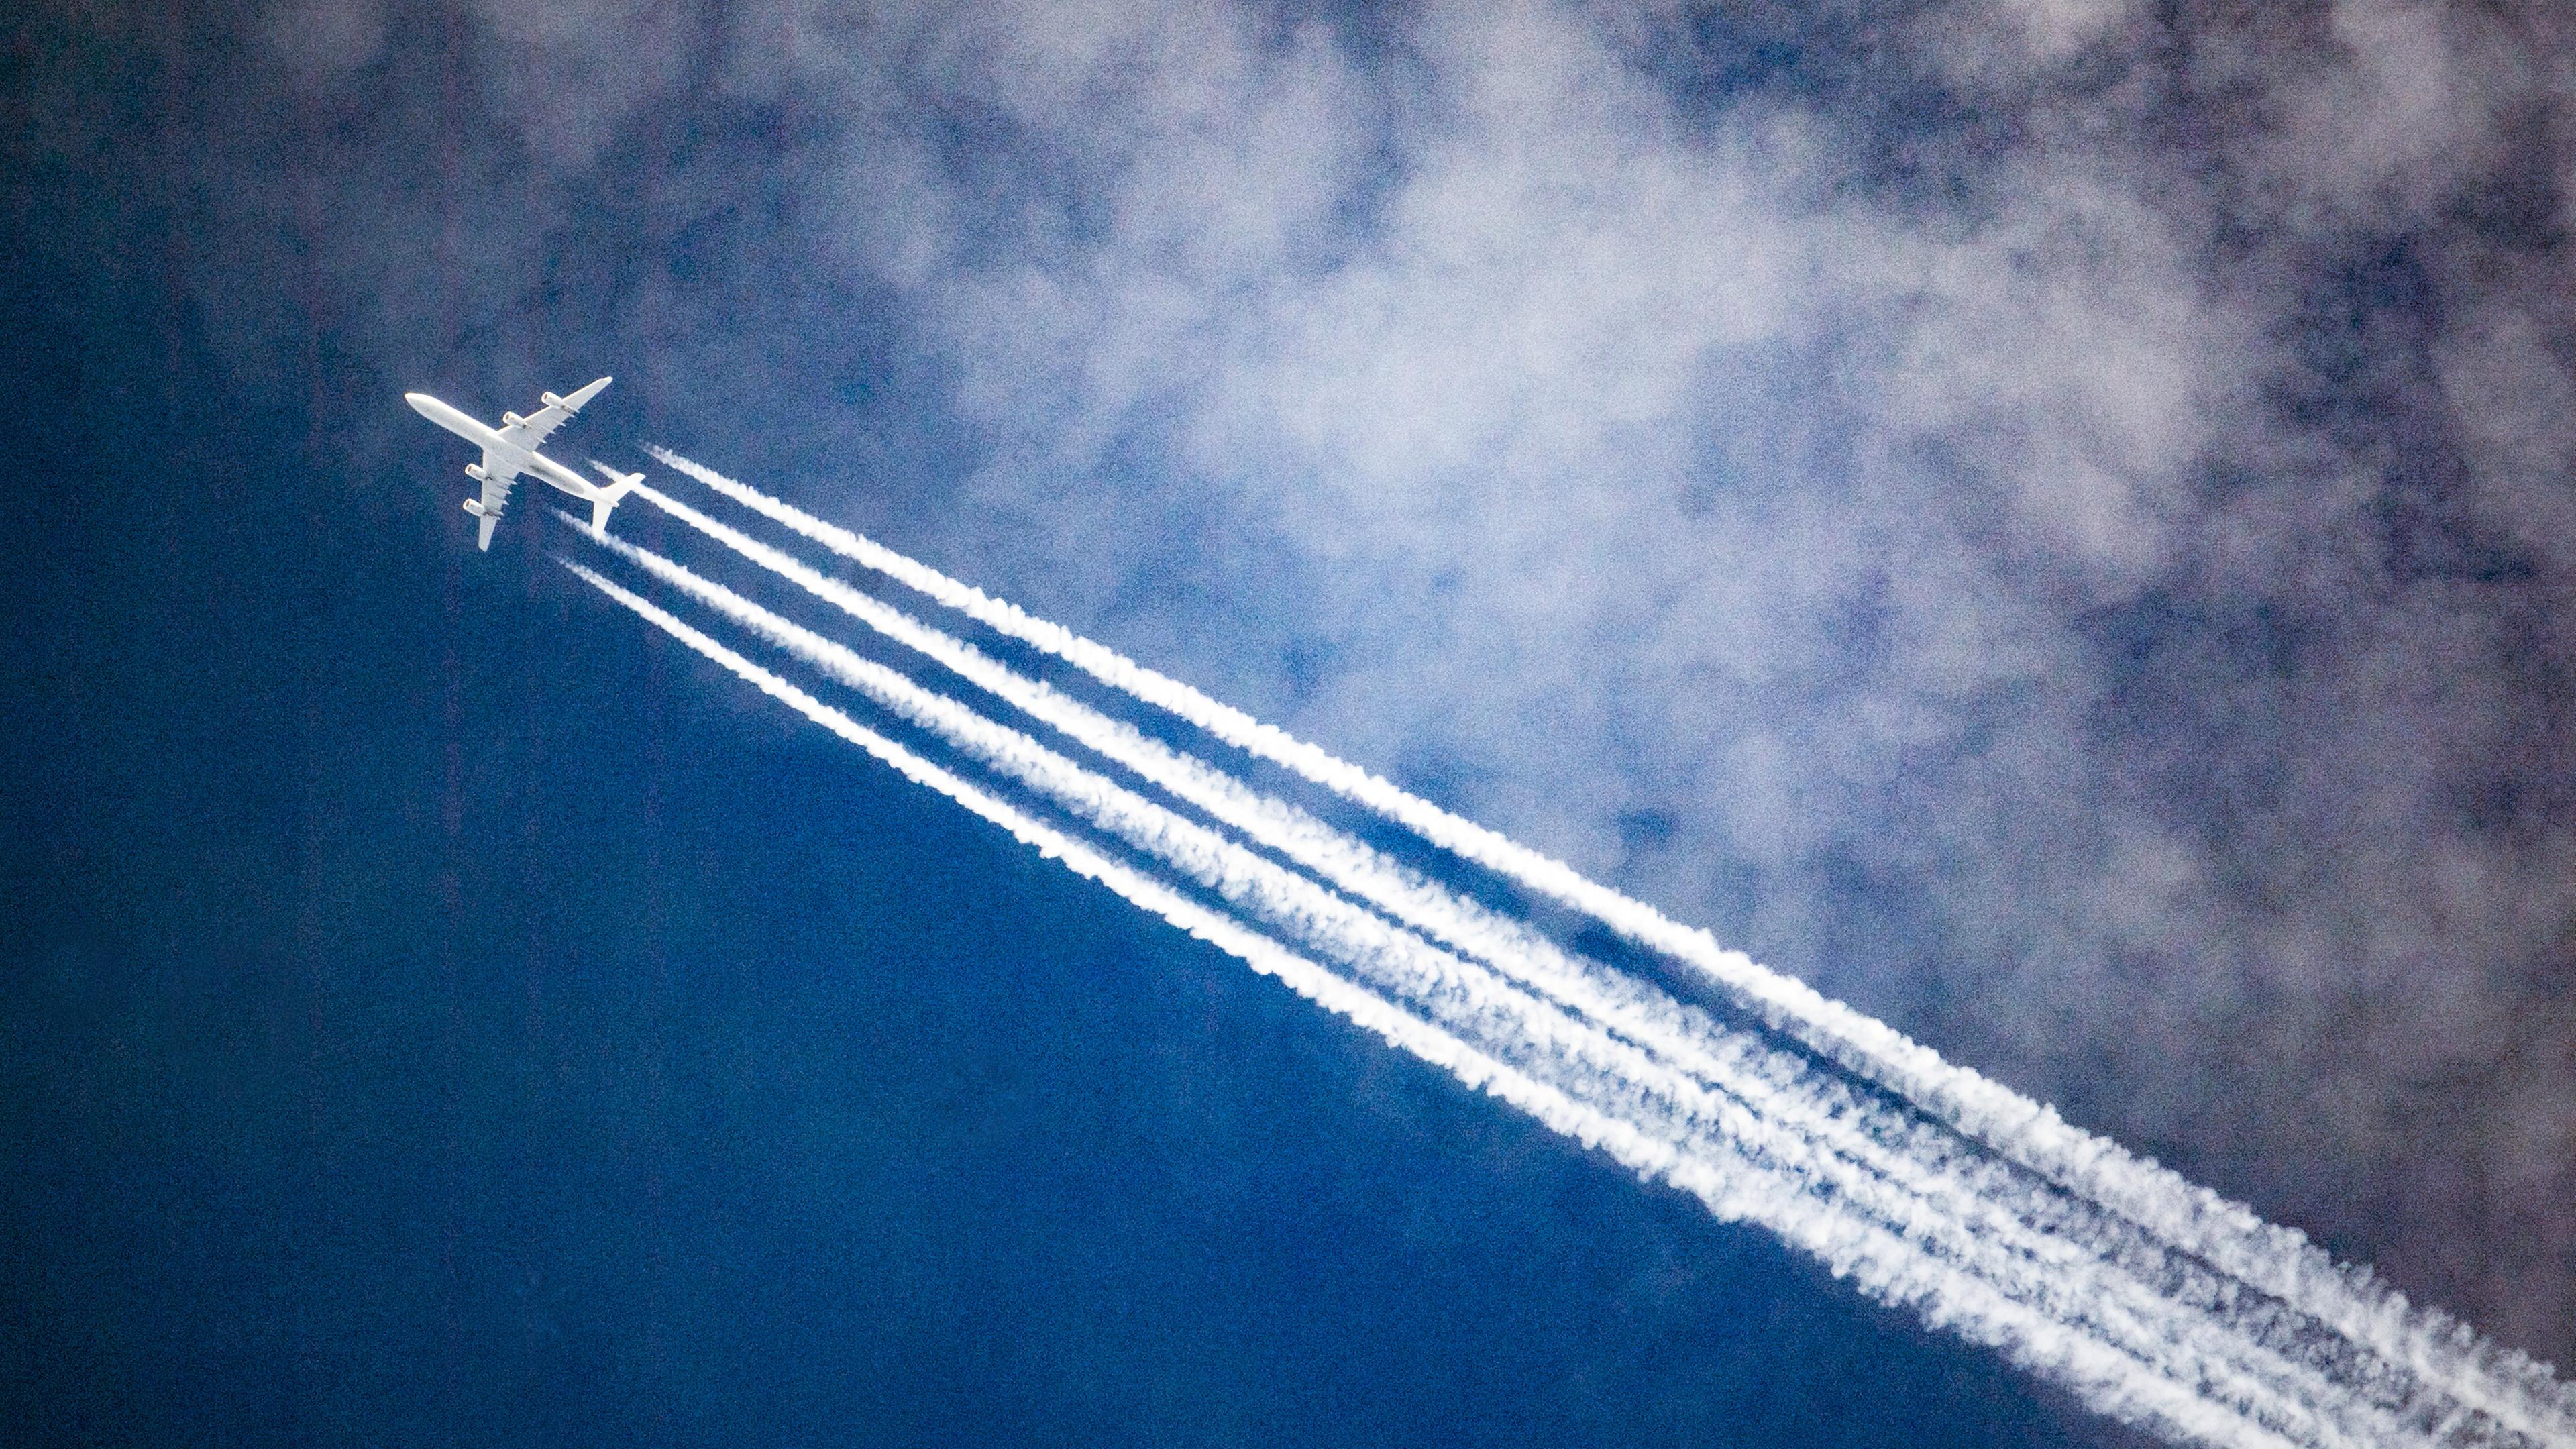 Flugzeug am Himmel erzeugt Kondensstreifen